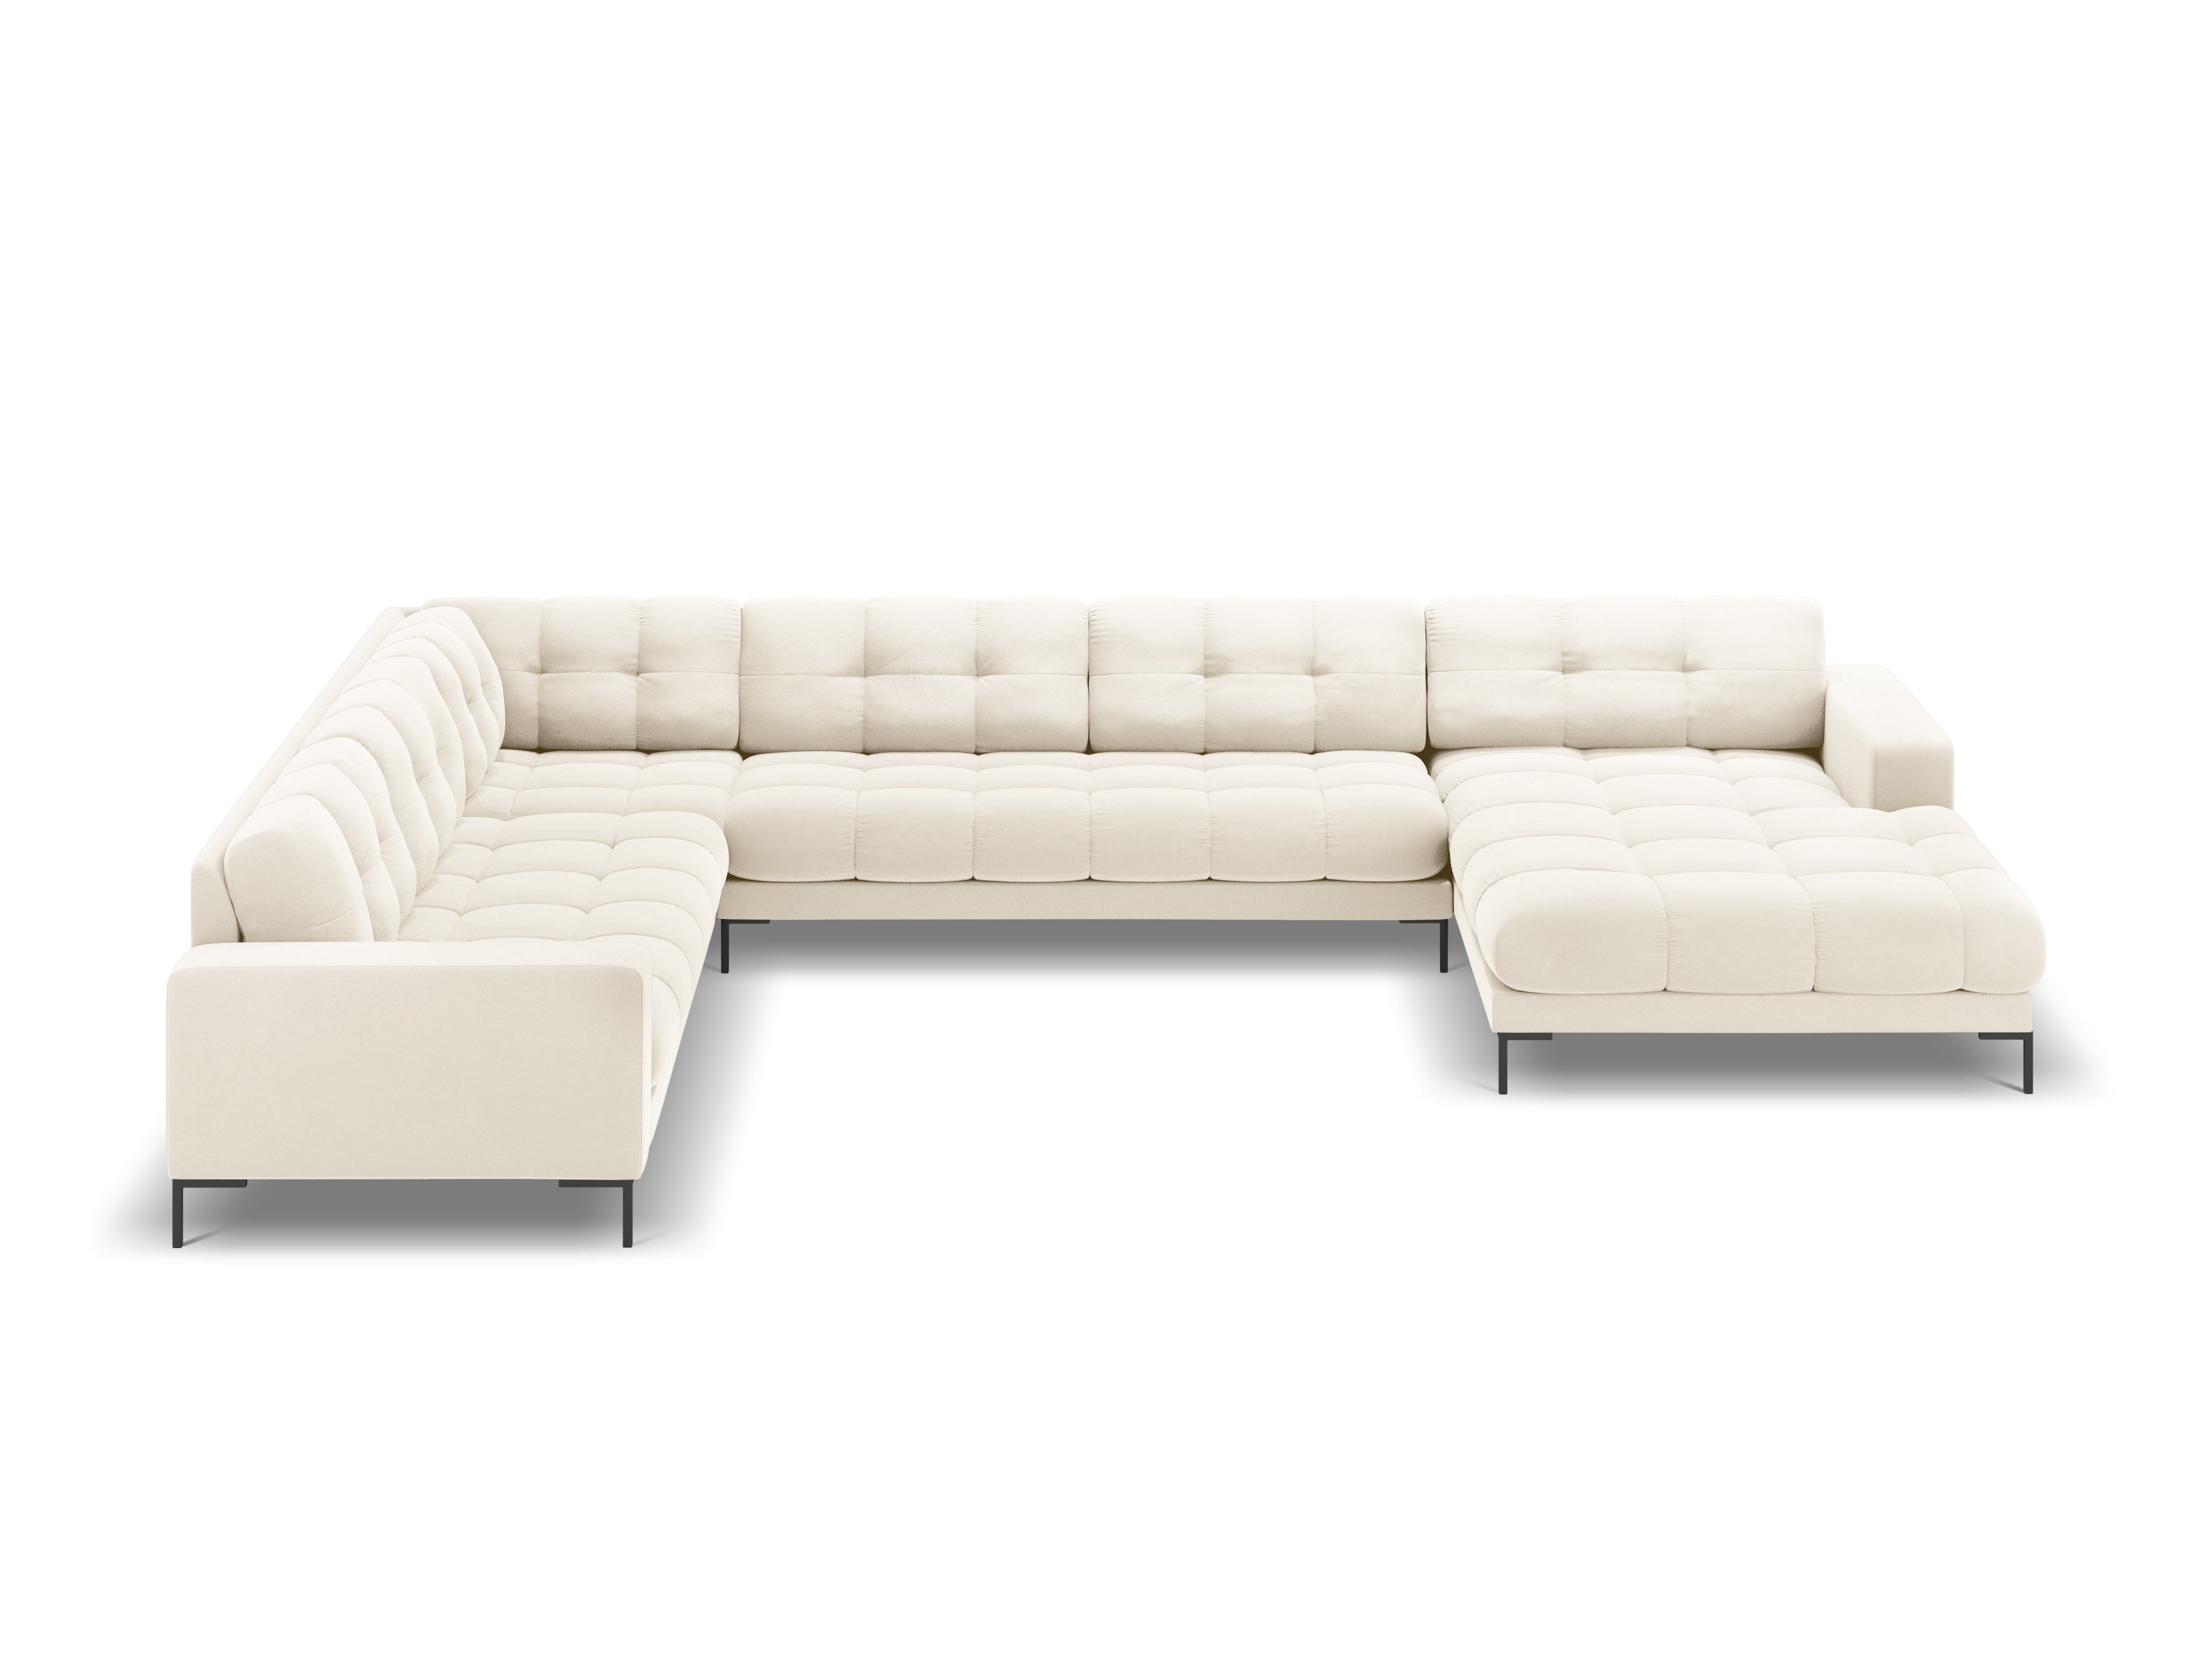 Panoramic velvet sofa left side 7 seater BALI light beige with black base